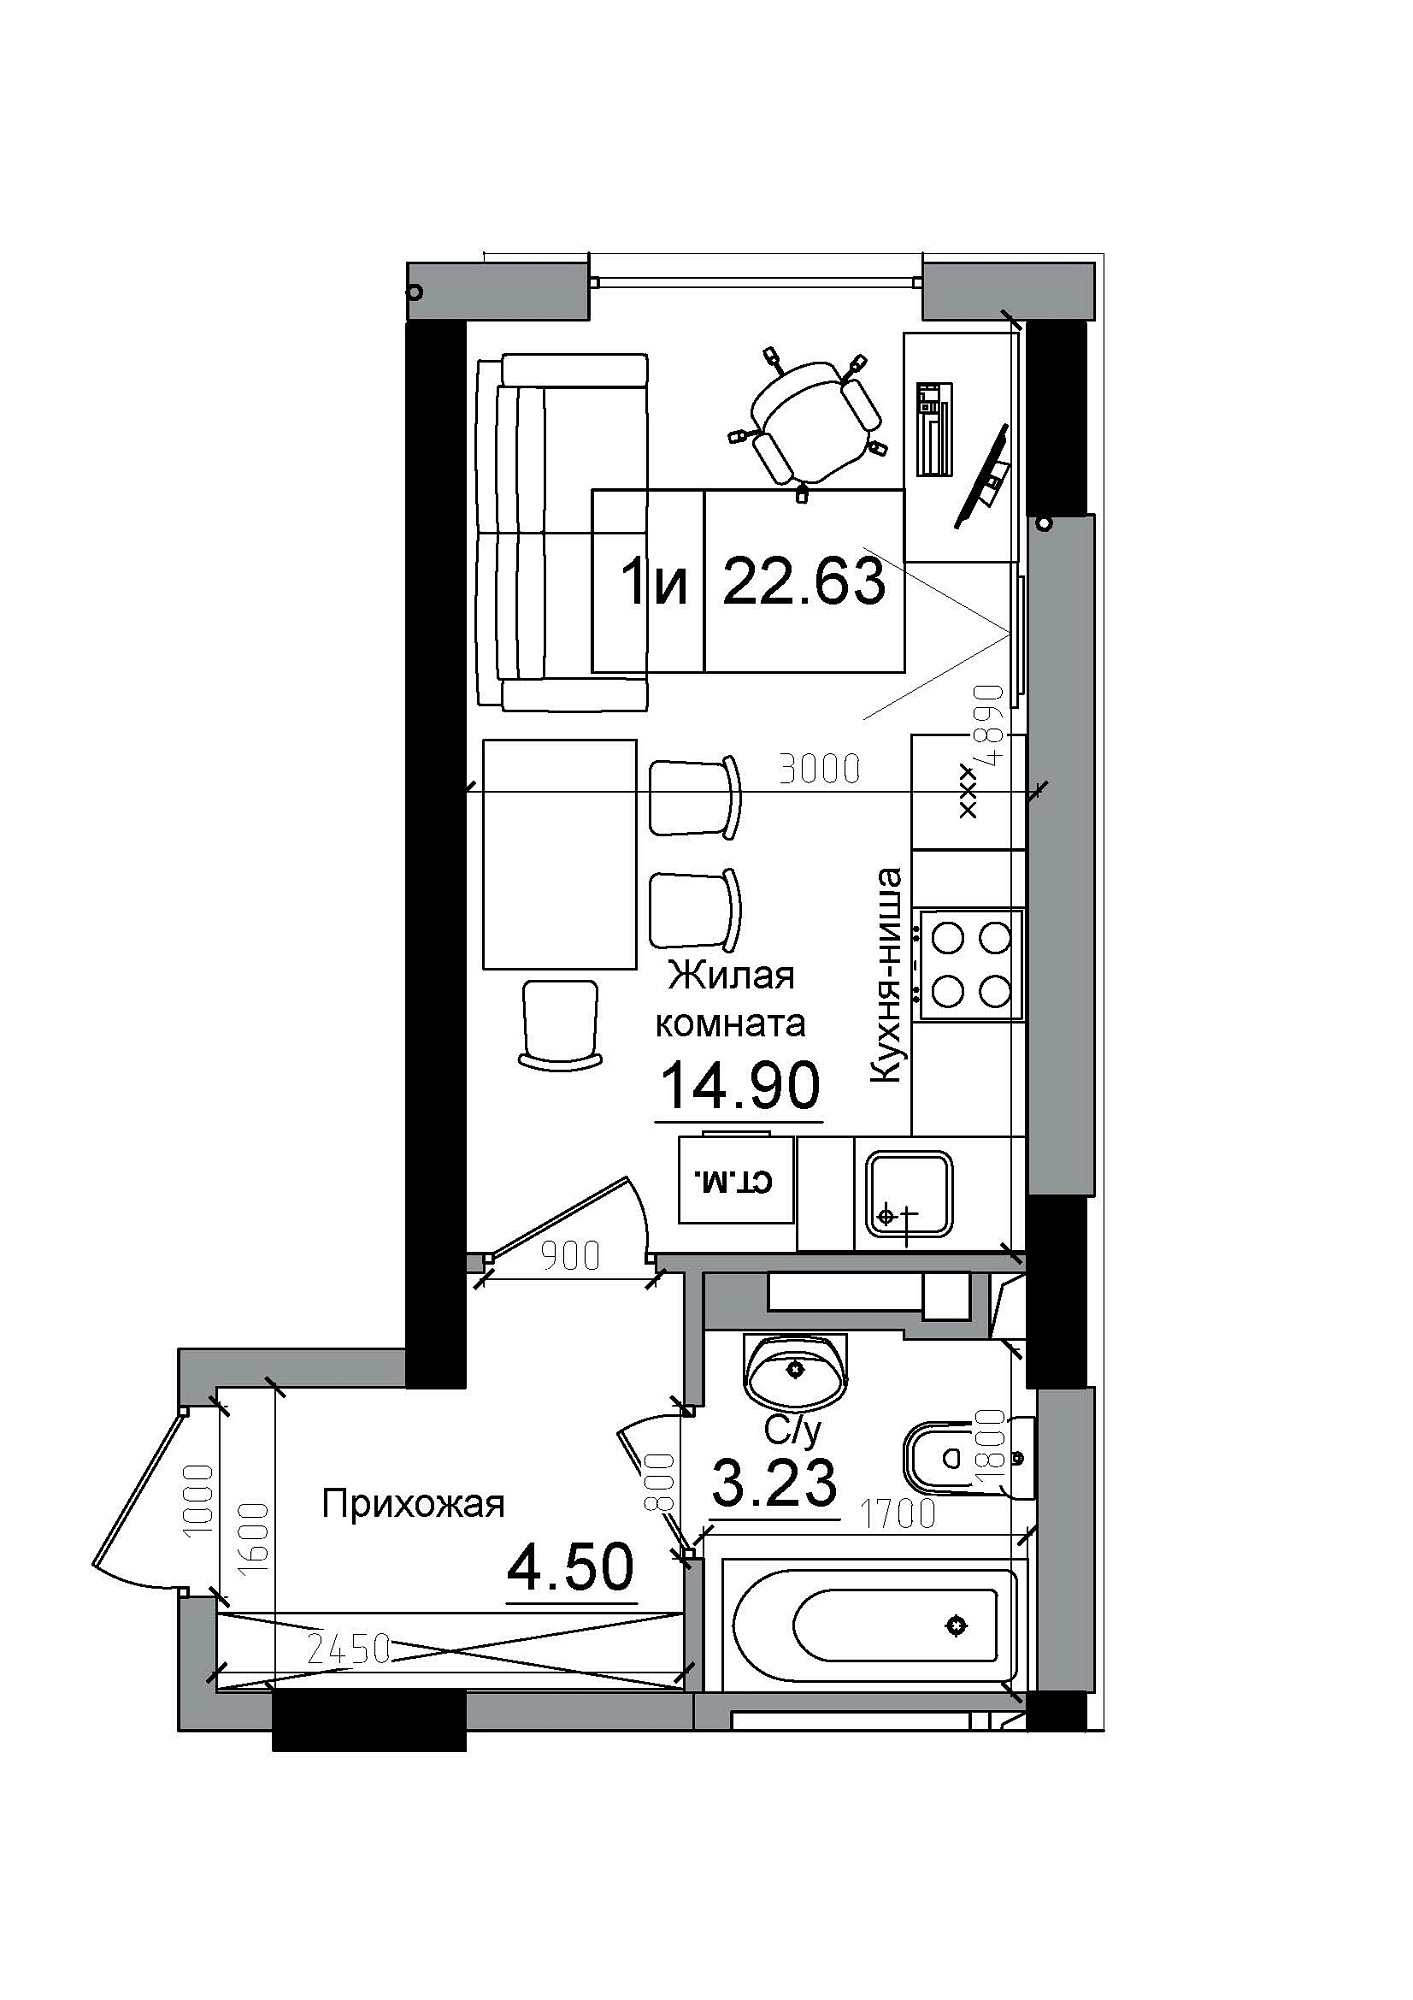 Планування Smart-квартира площею 22.63м2, AB-12-09/00011.